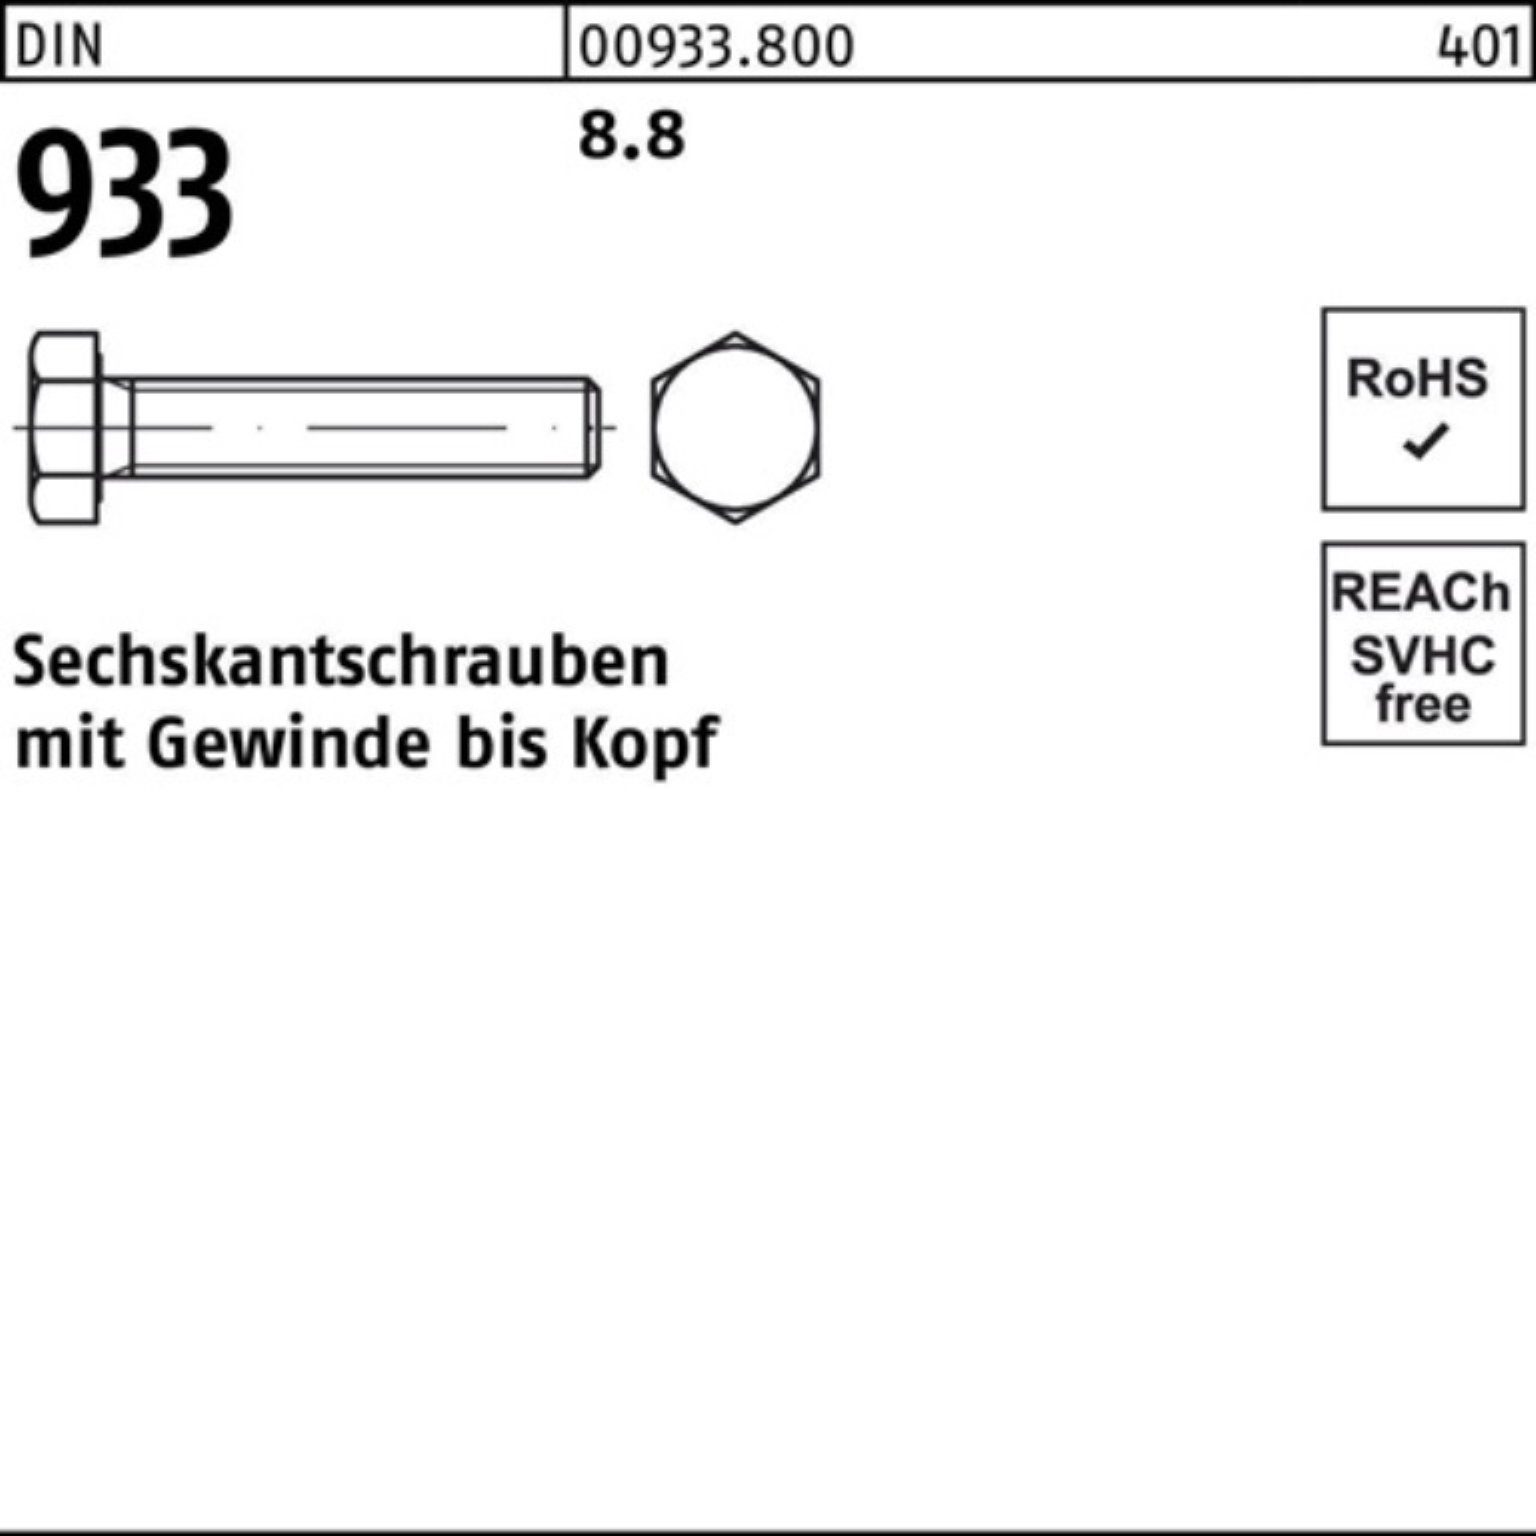 Pack 933 933 100 VG Sechskantschraube Reyher DIN M5x 8.8 100er DIN Sechskantschraube Stück 18